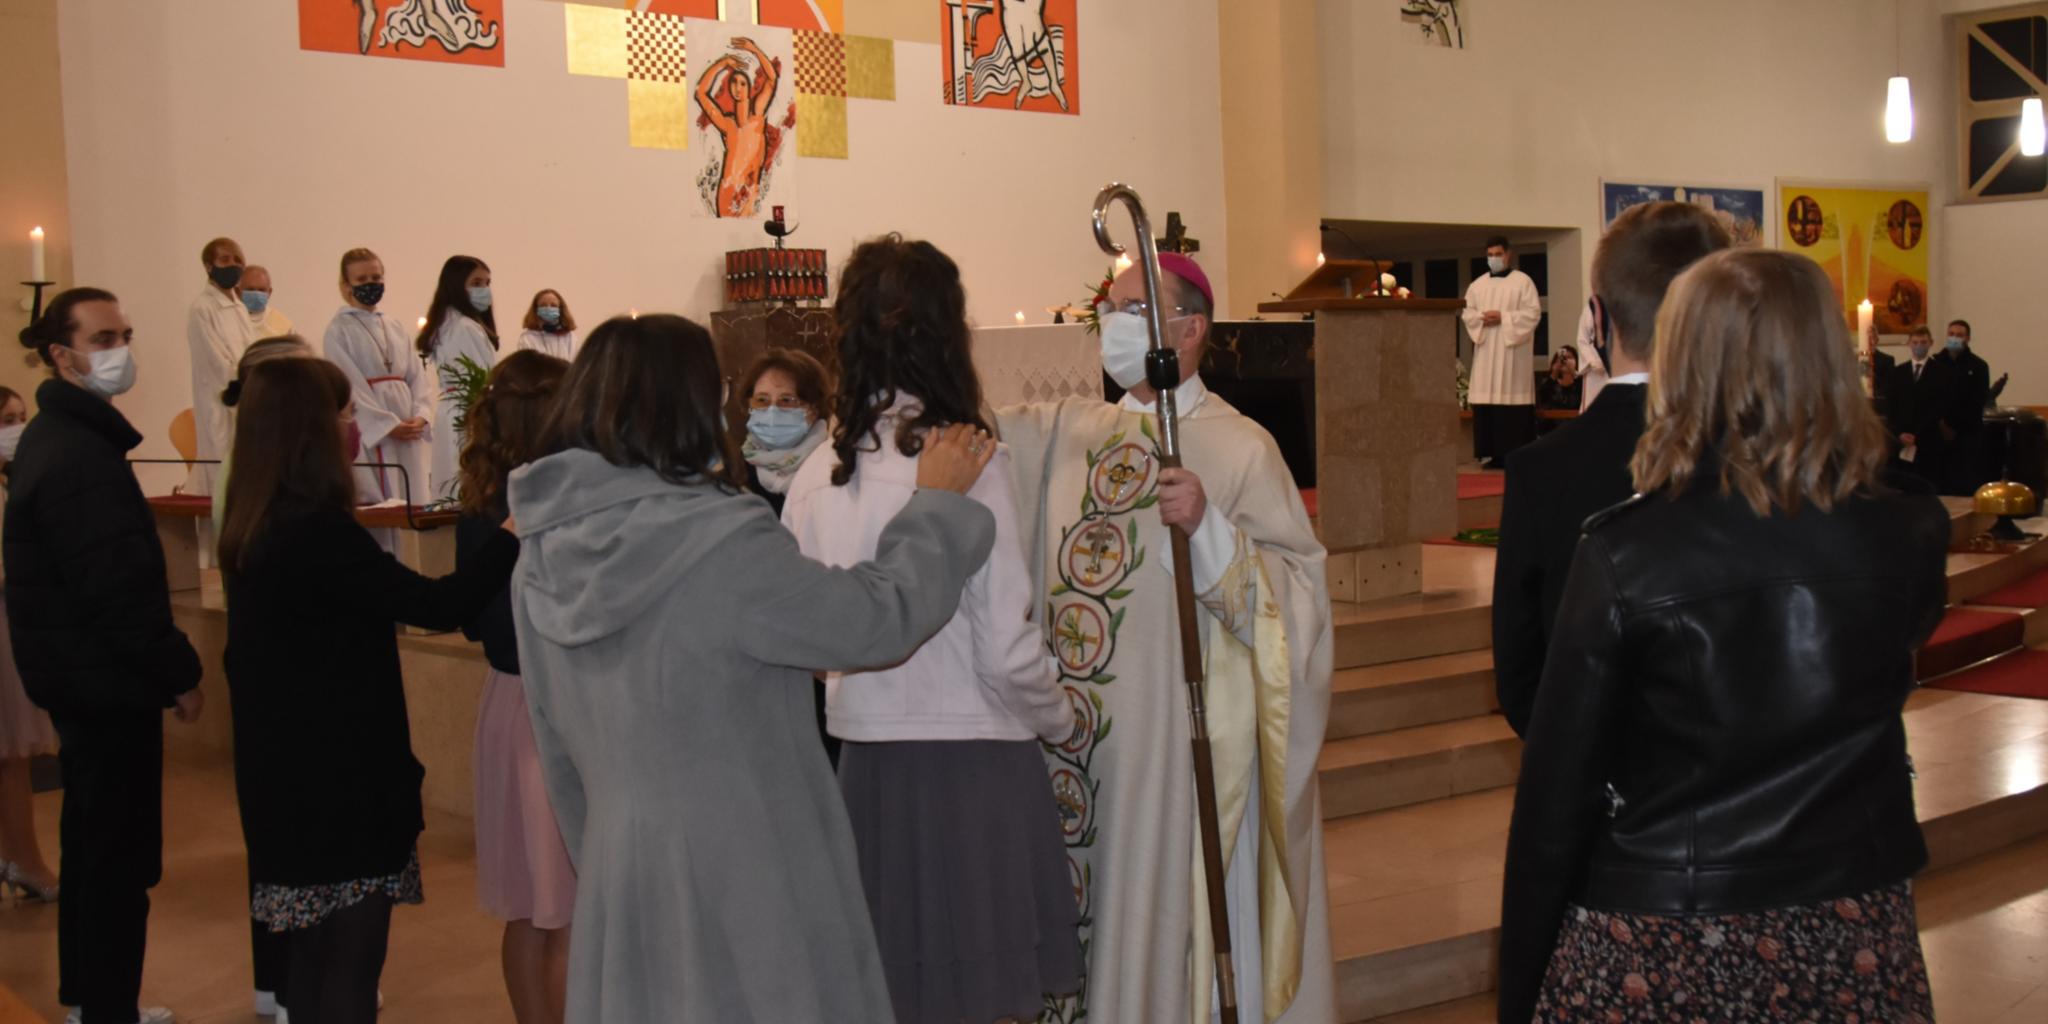 Weihbischof Robert Brahm spendet Jugendlichen das Sakrament der Firmung in der Pfarrkirche Herz Jesu in Wadgassen-Hostenbach am 31. Oktober 2020. Foto: Ute Kirch